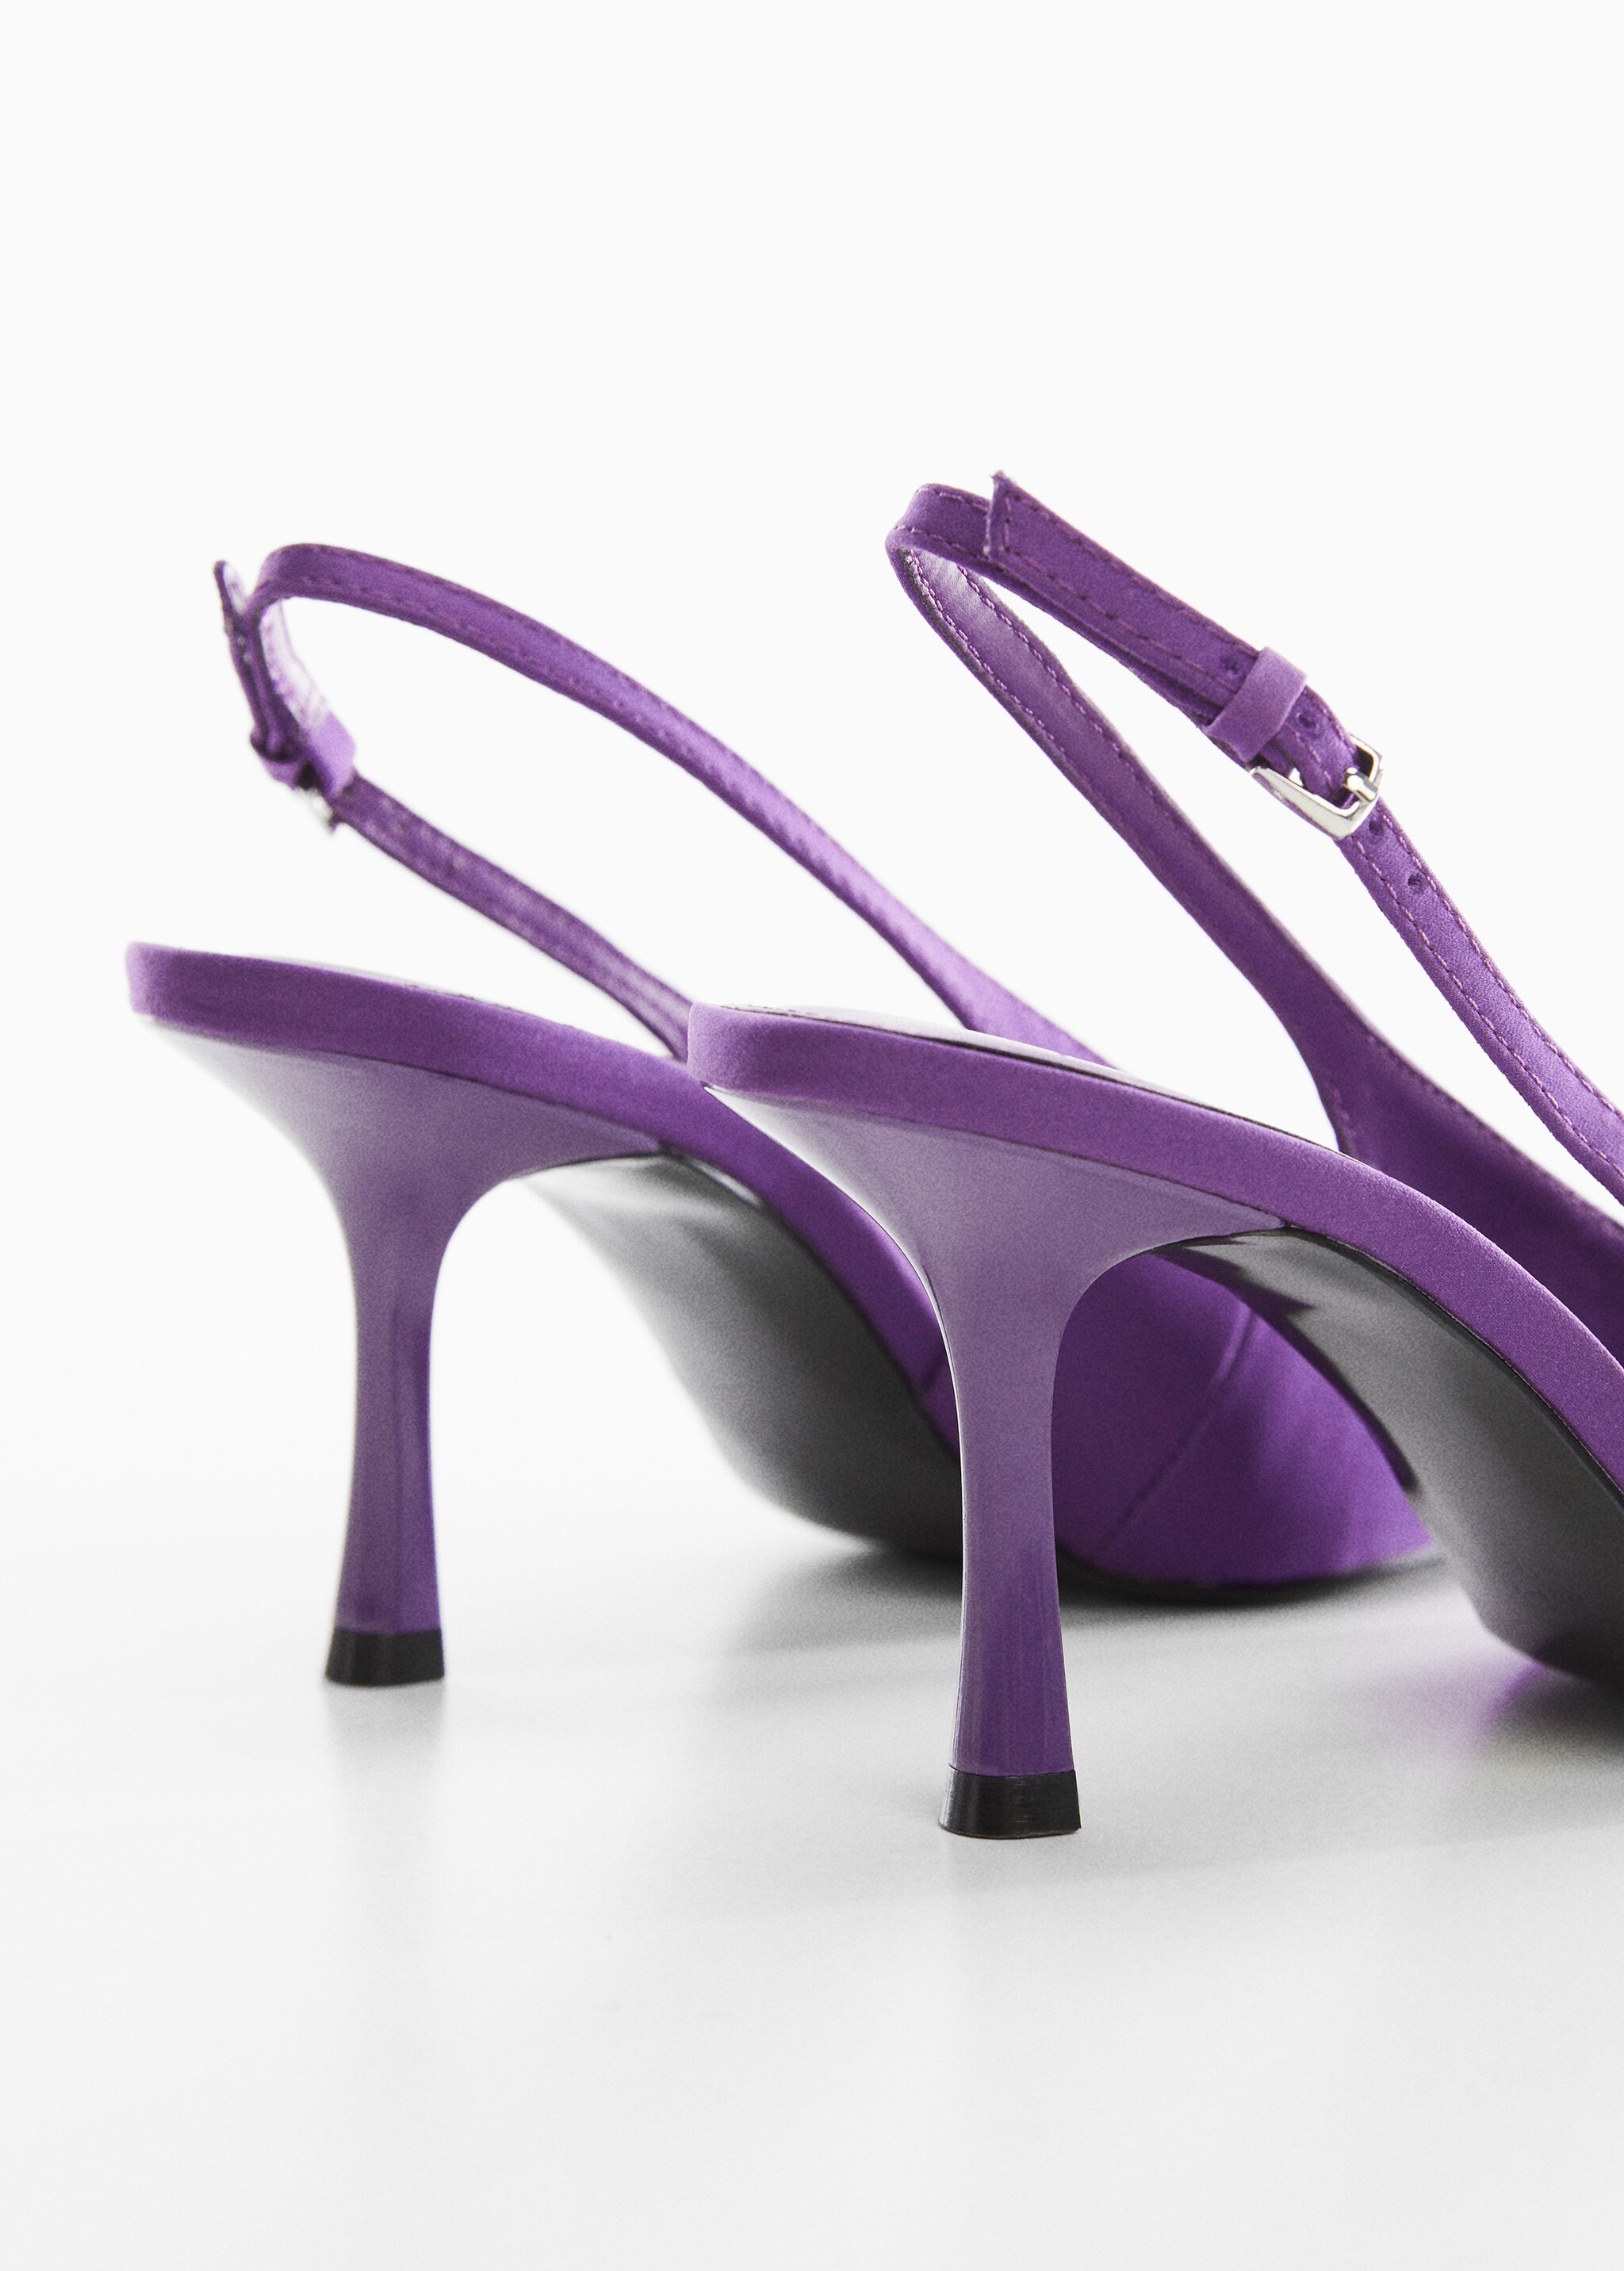 Sling back heel shoes - Λεπτομέρεια του προϊόντος 1